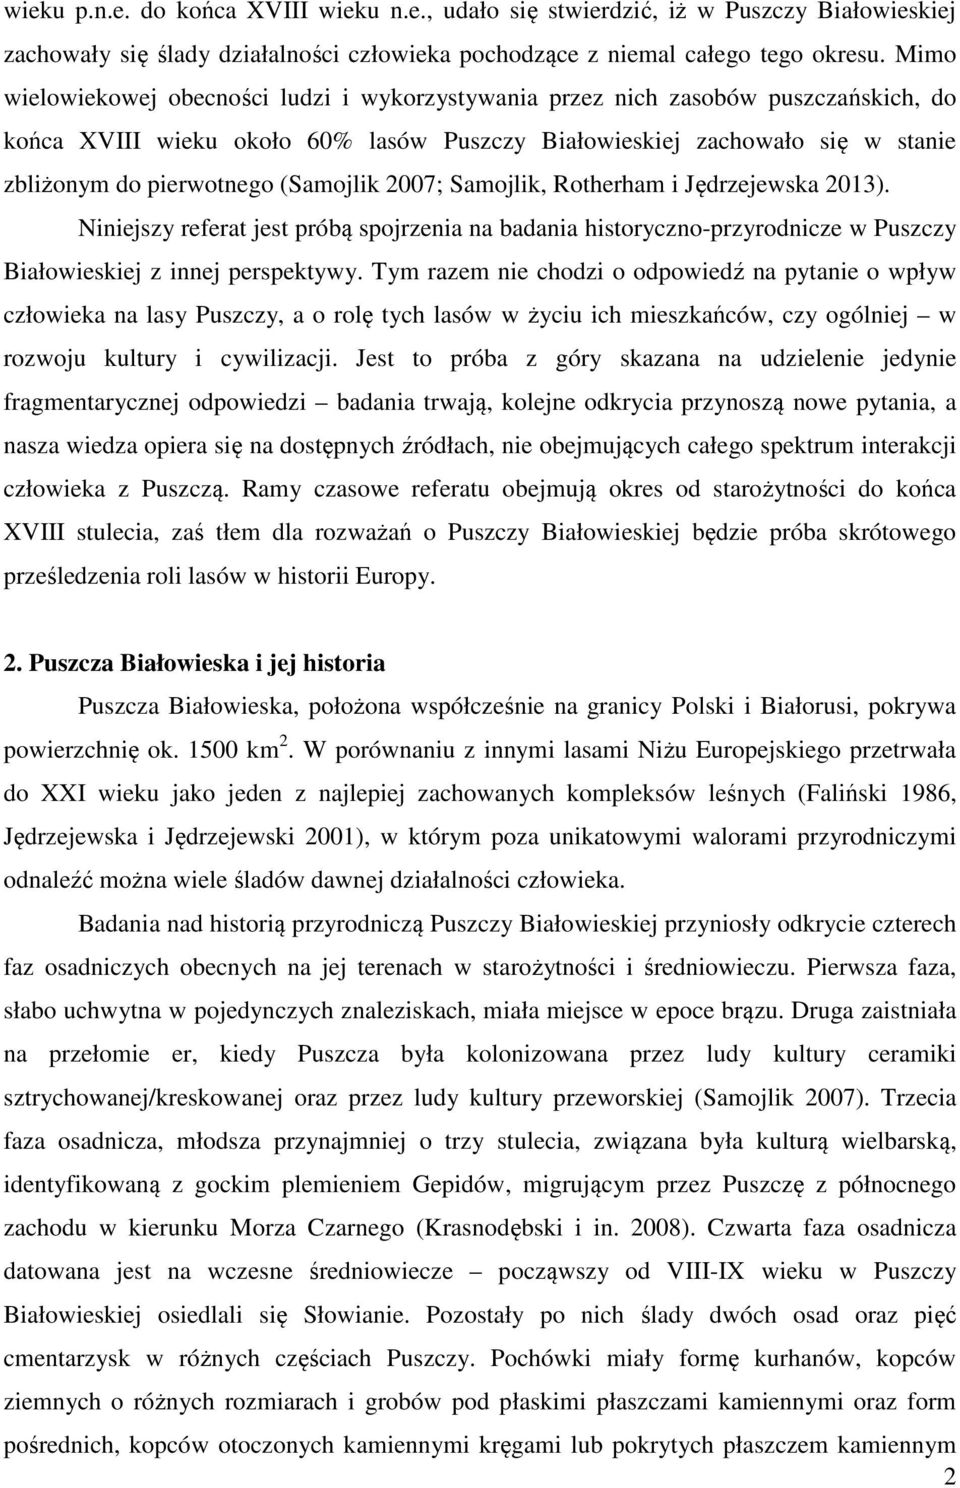 (Samojlik 2007; Samojlik, Rotherham i Jędrzejewska 2013). Niniejszy referat jest próbą spojrzenia na badania historyczno-przyrodnicze w Puszczy Białowieskiej z innej perspektywy.